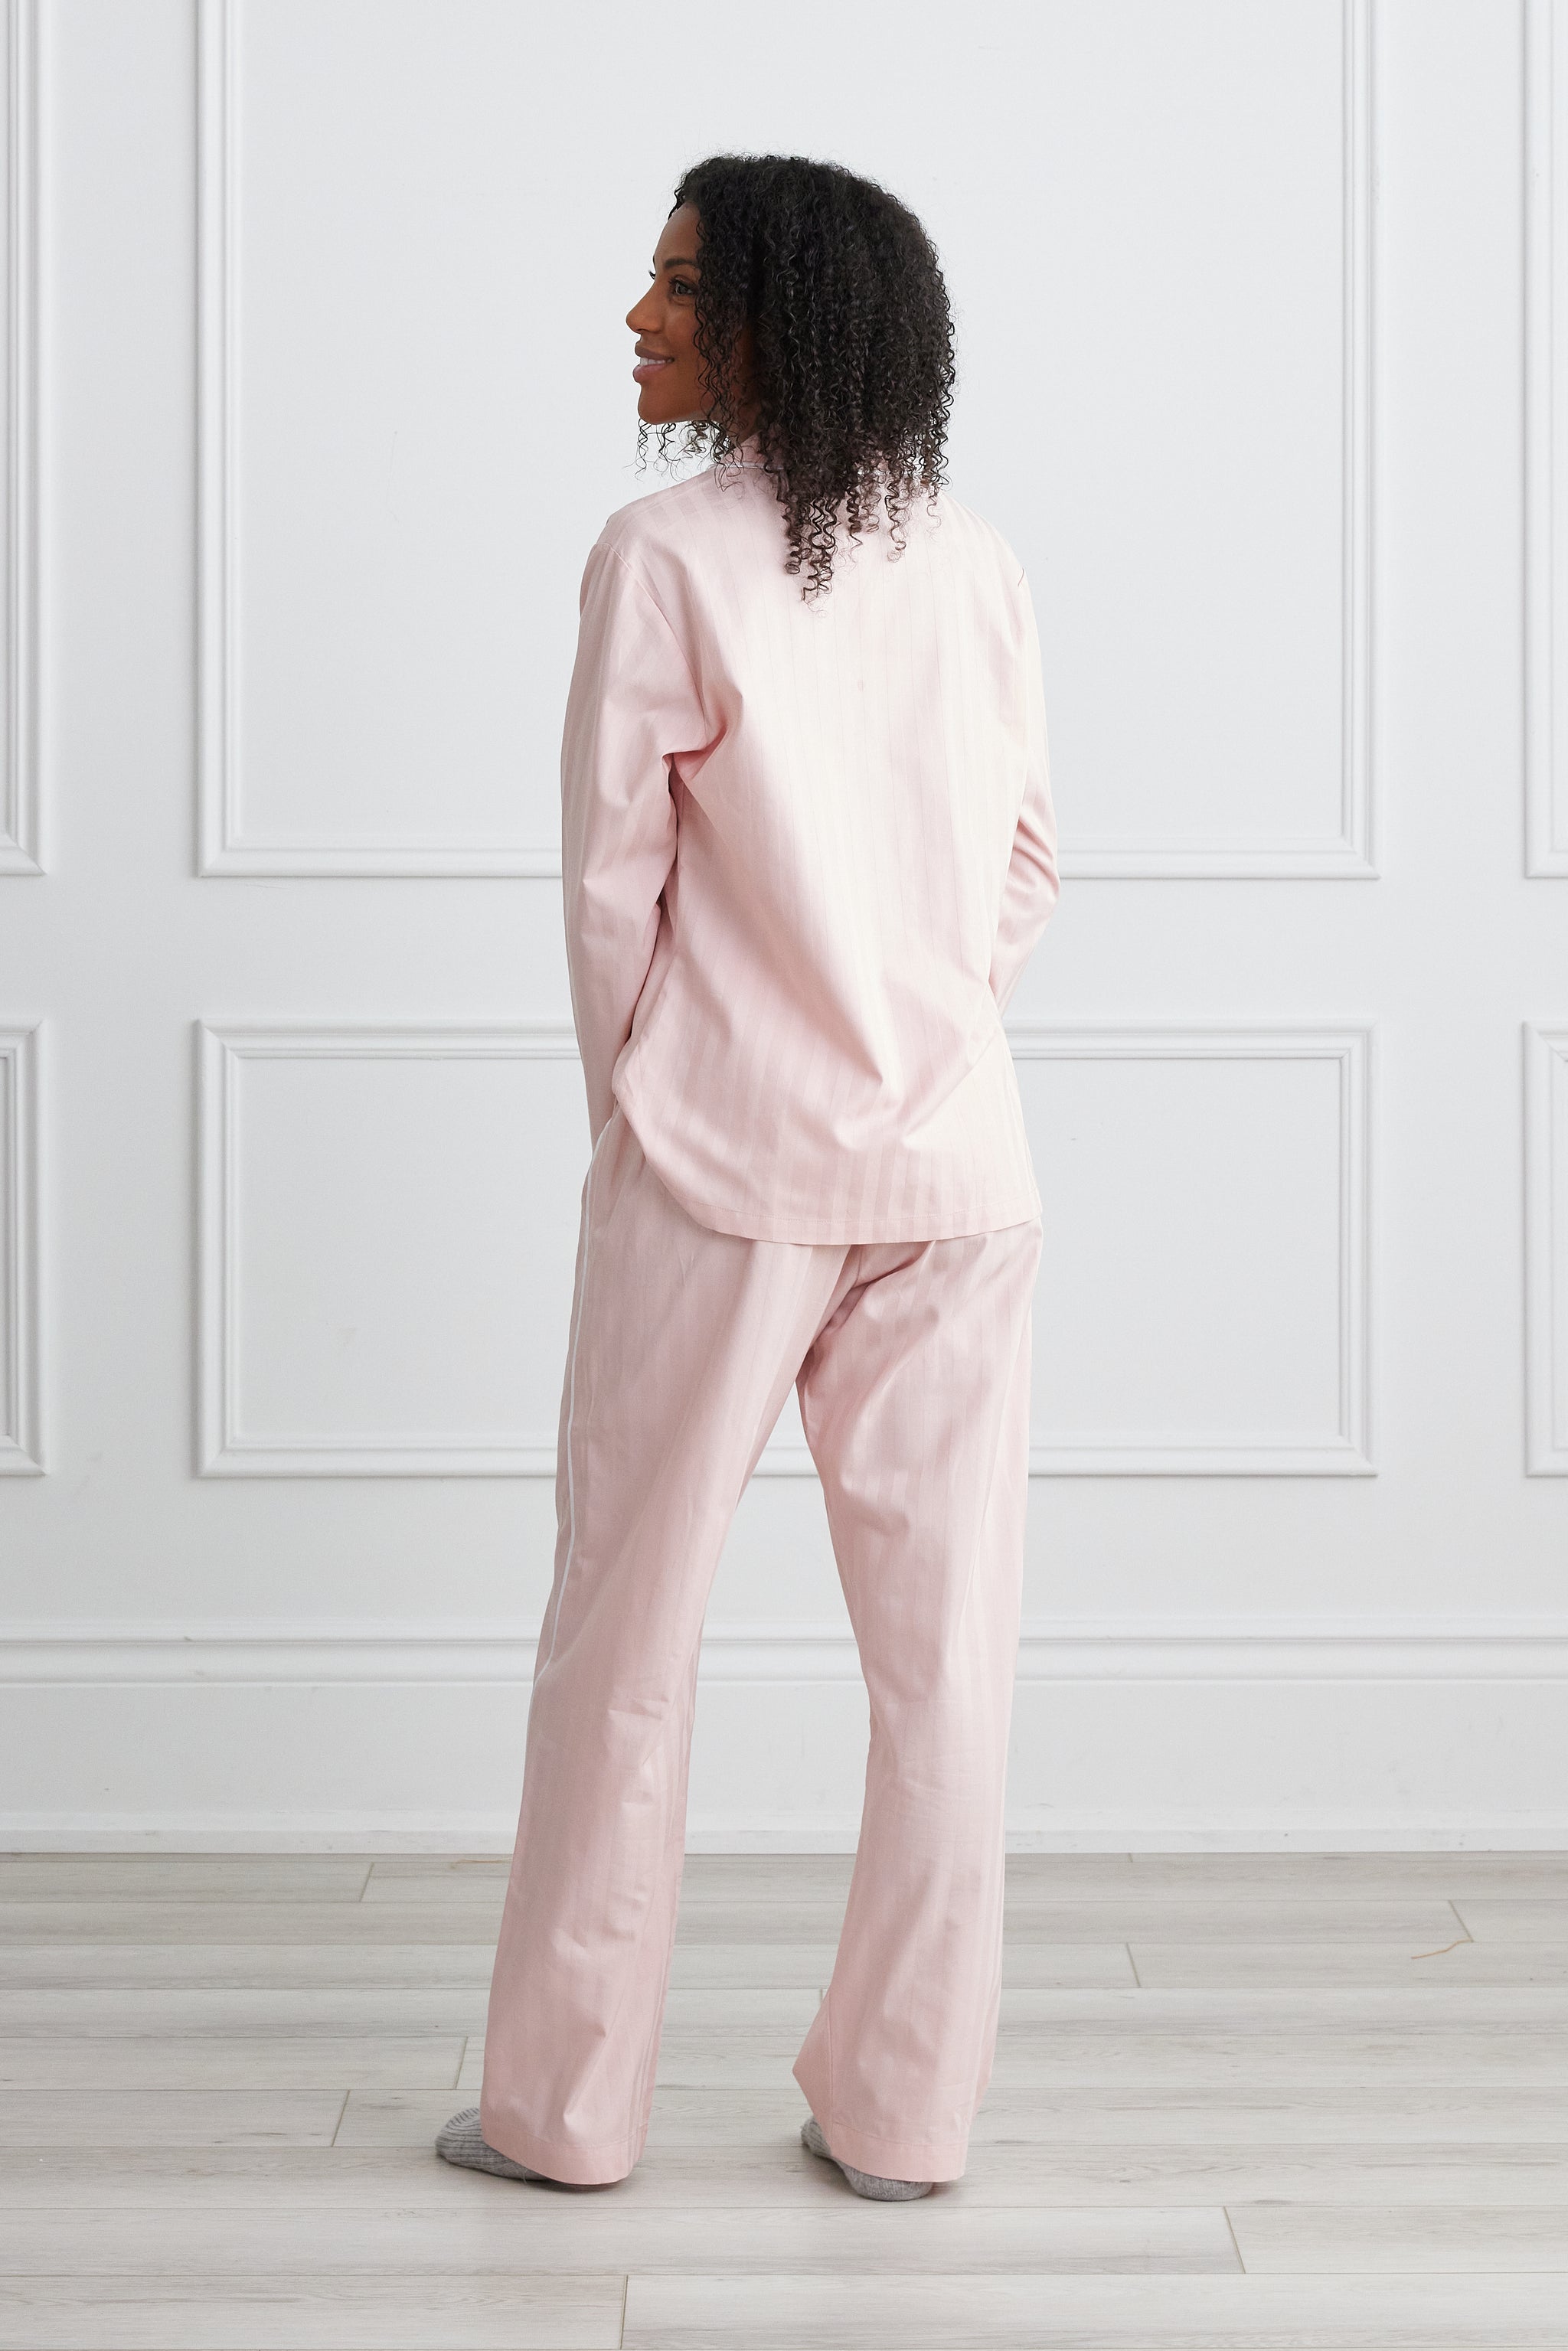 Womens Pajama Set 100% Cotton Pajamas Long Sleeve Women Sleepwear